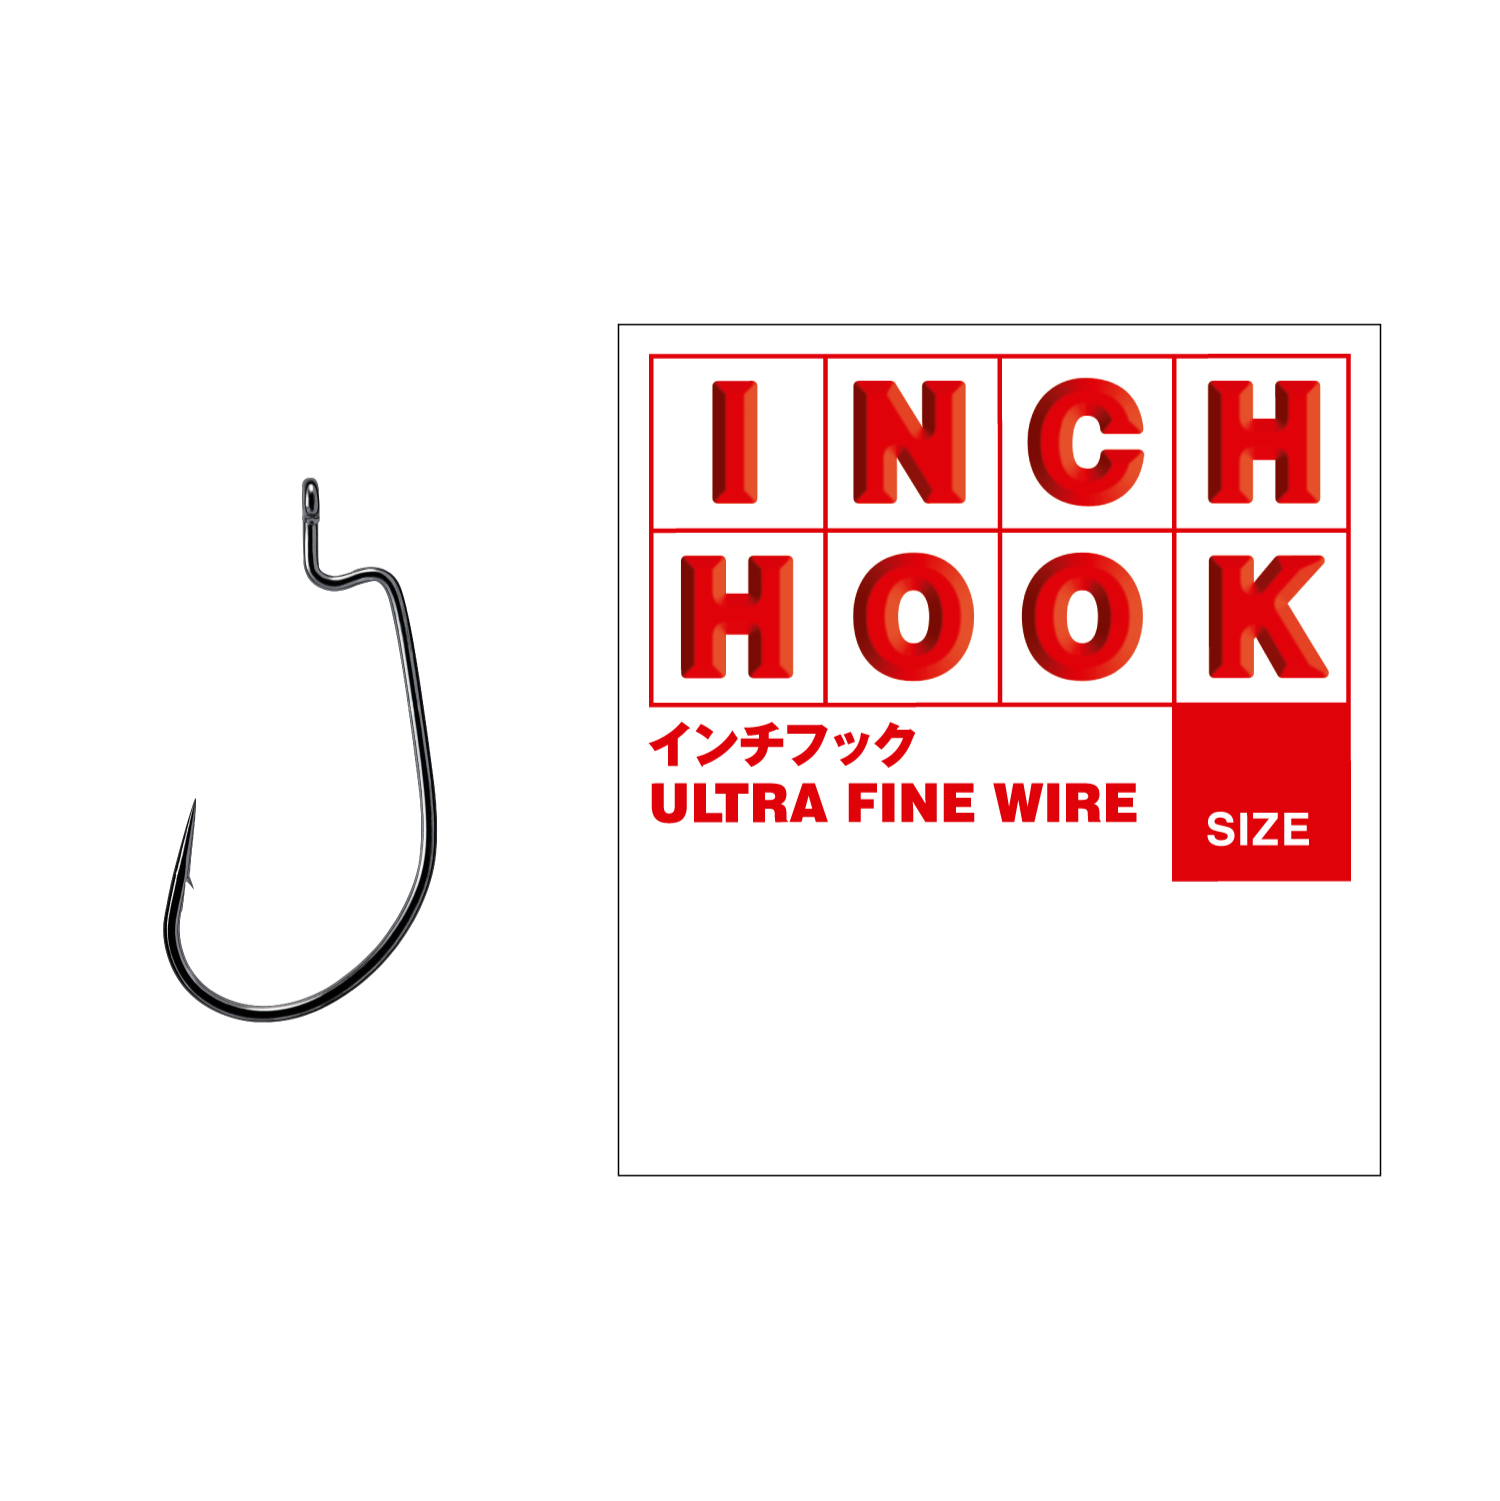 Inch Hook